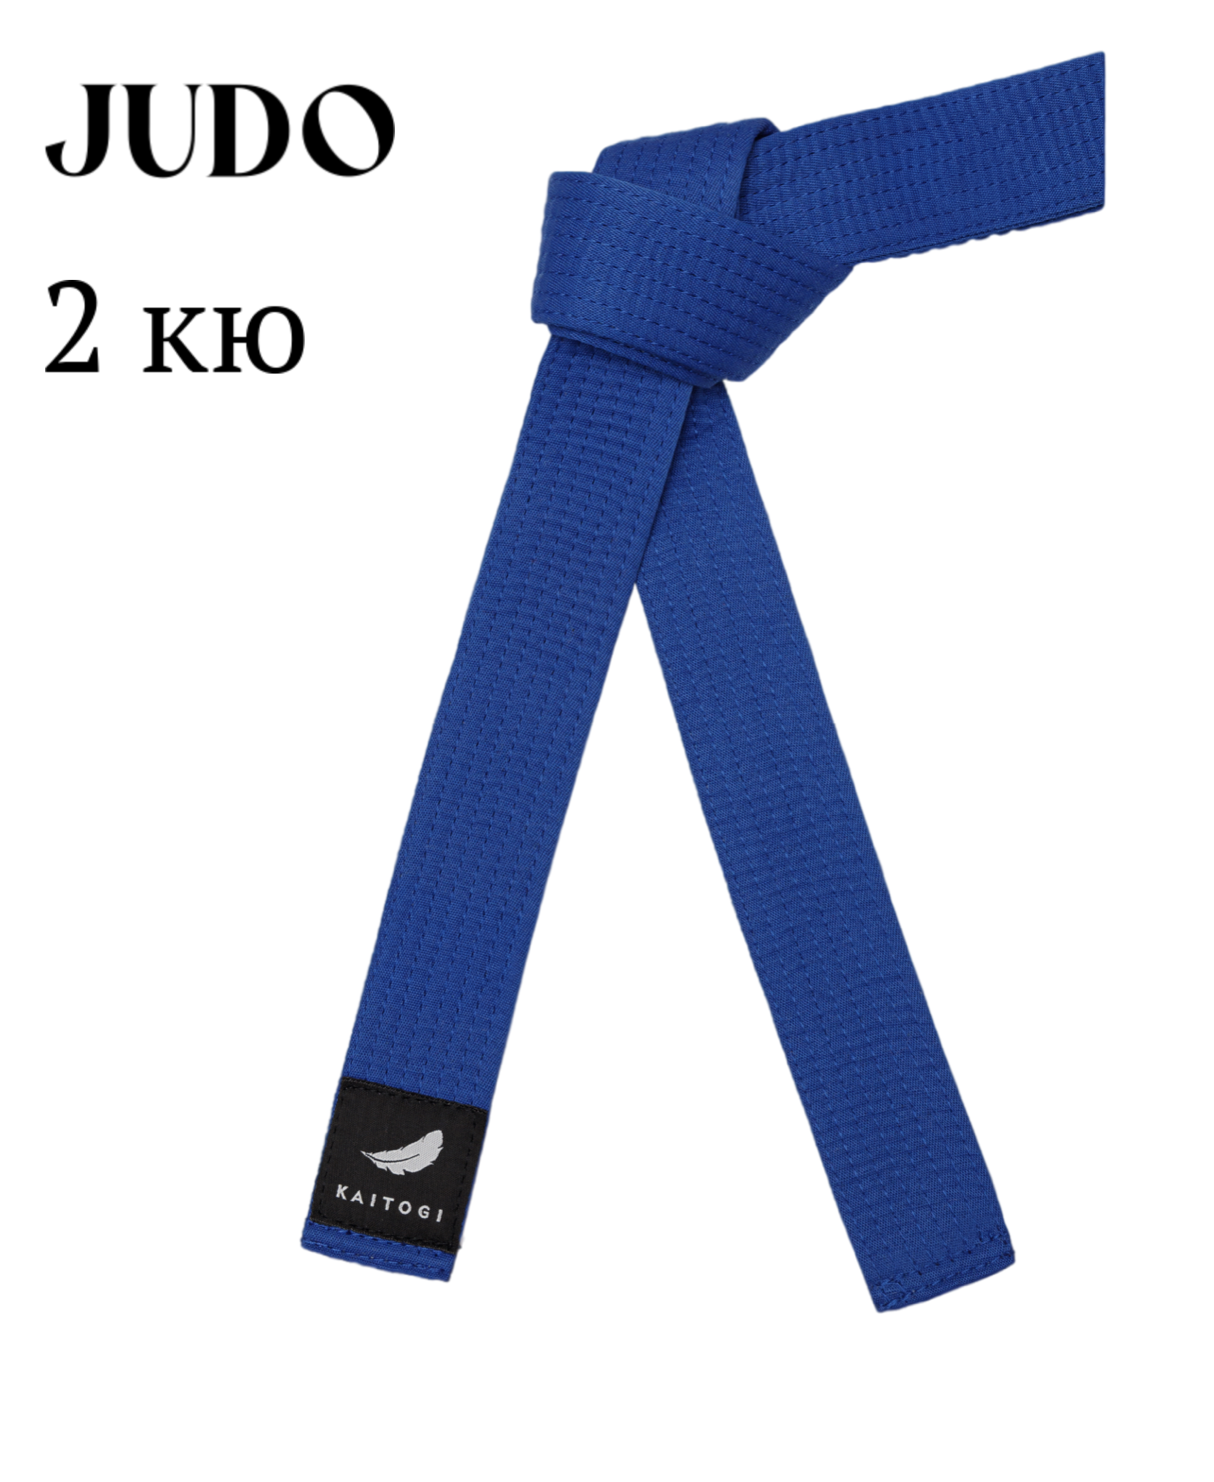 Пояс KAITOGI для дзюдо 2 кю синий 210 см